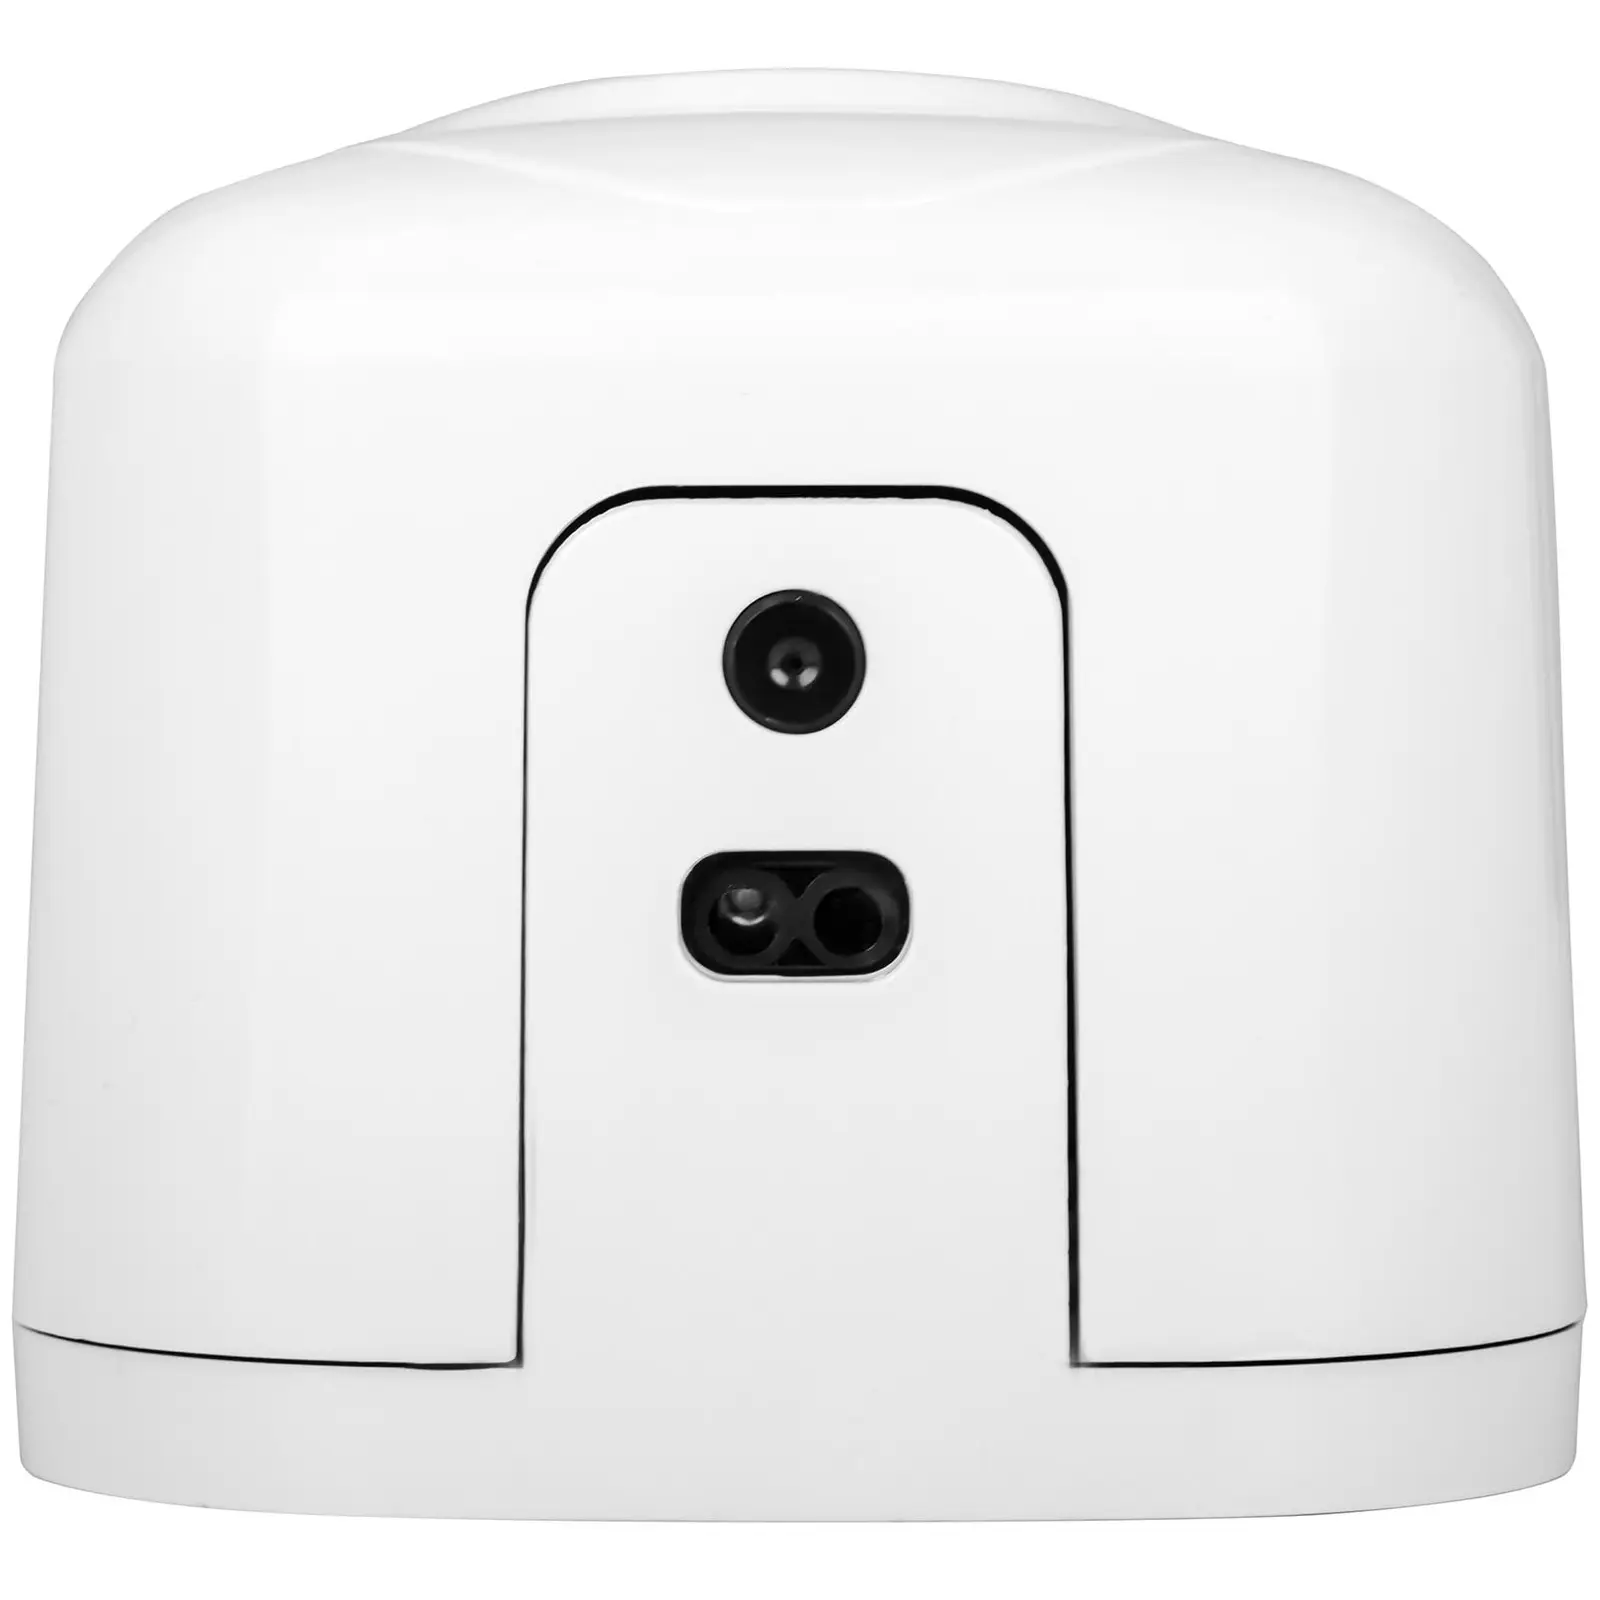 Dispenser sapone automatico - 1 L - Montaggio a muro - Bloccabile - Bianco/nero